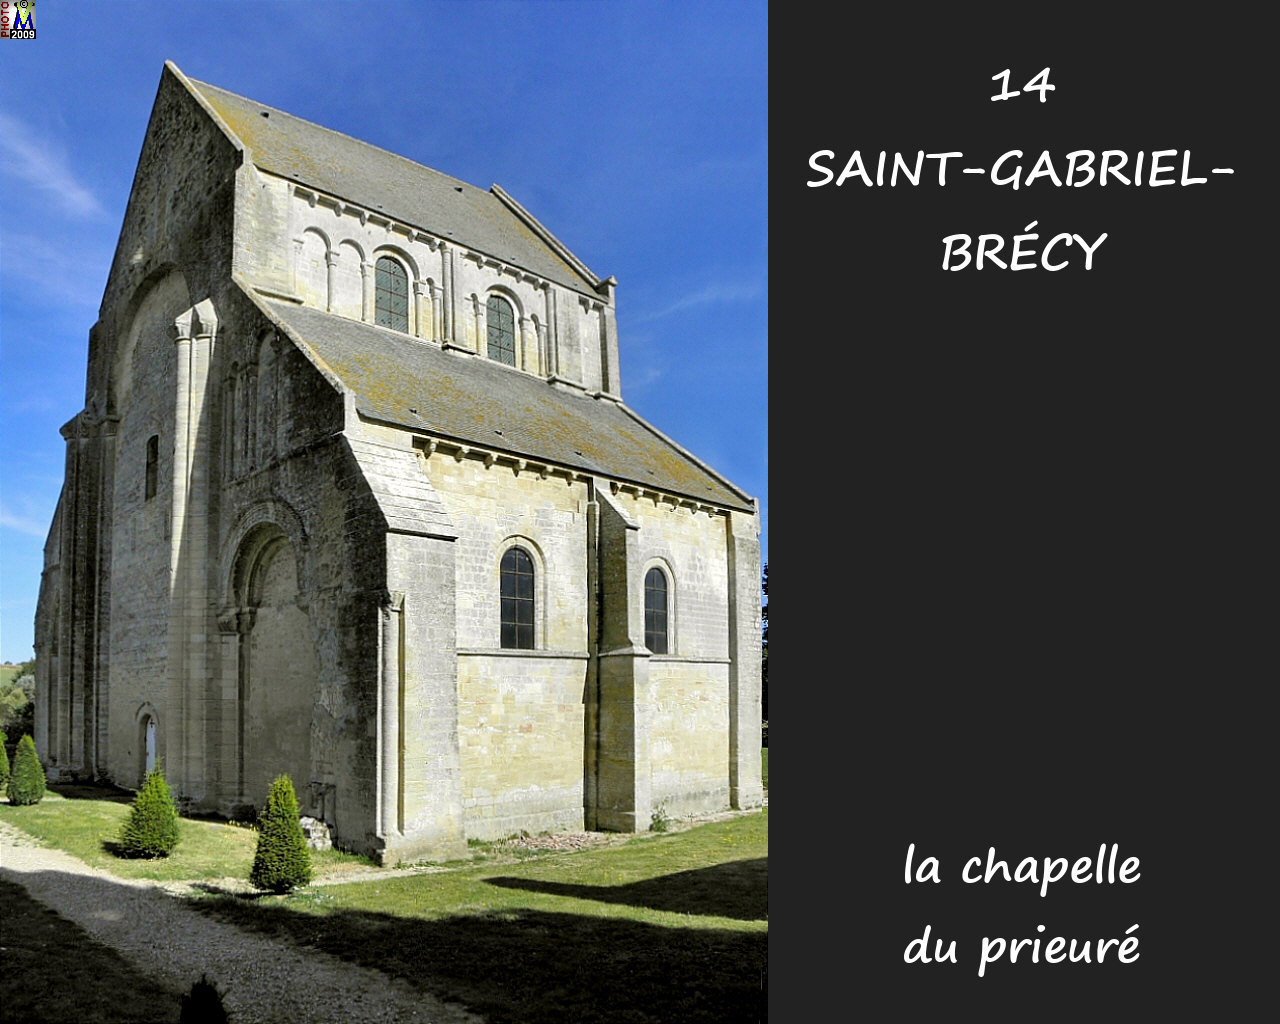 14StGABRIEL-BRECY_chapelle_102.jpg